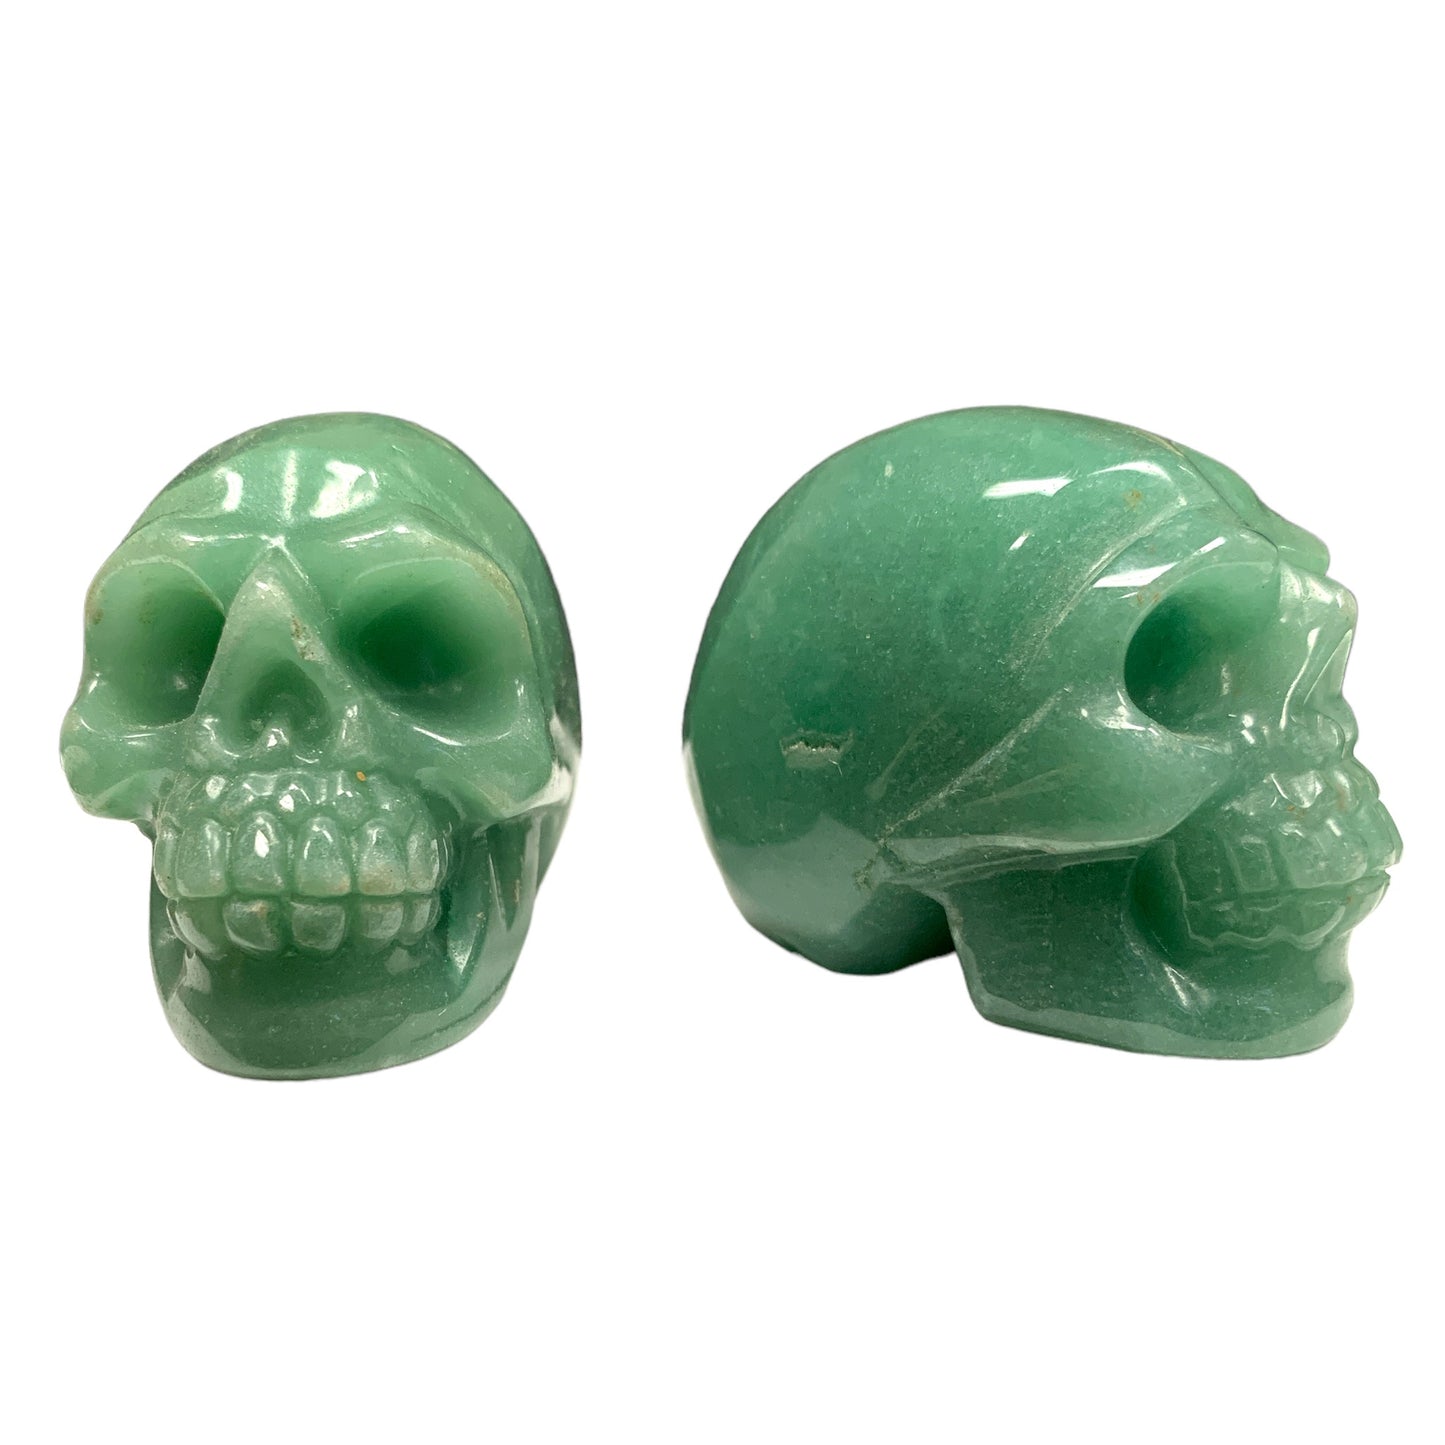 Skull Small - GREEN AVENTURINE - 40x50 mm - China - NEW622